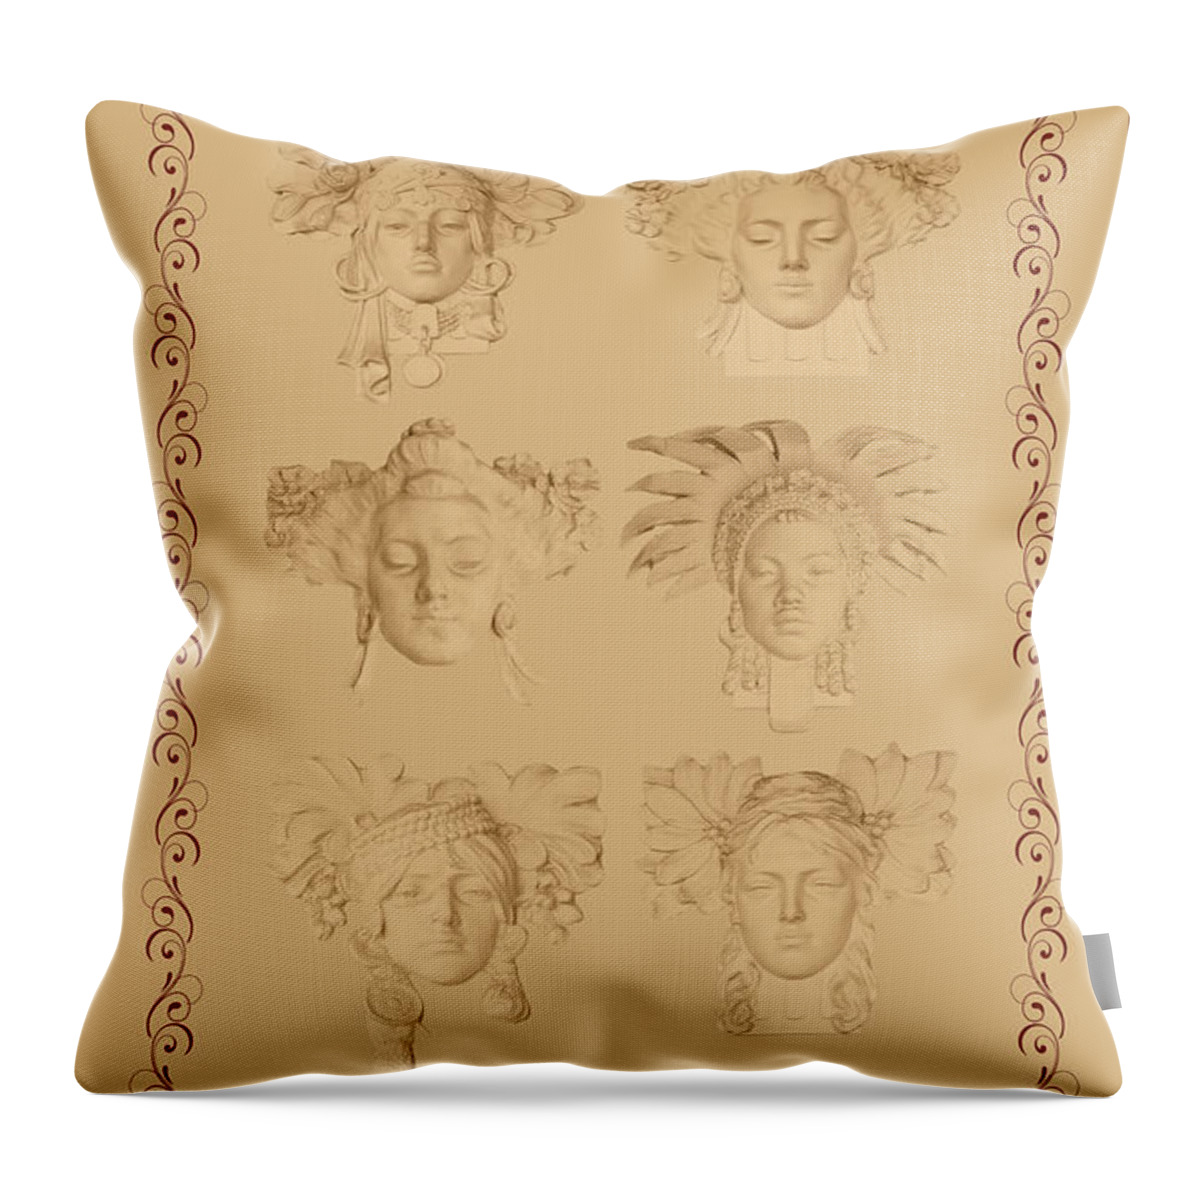 Art Nouveau Throw Pillow featuring the photograph Art Nouveau Faces by Doug Matthews